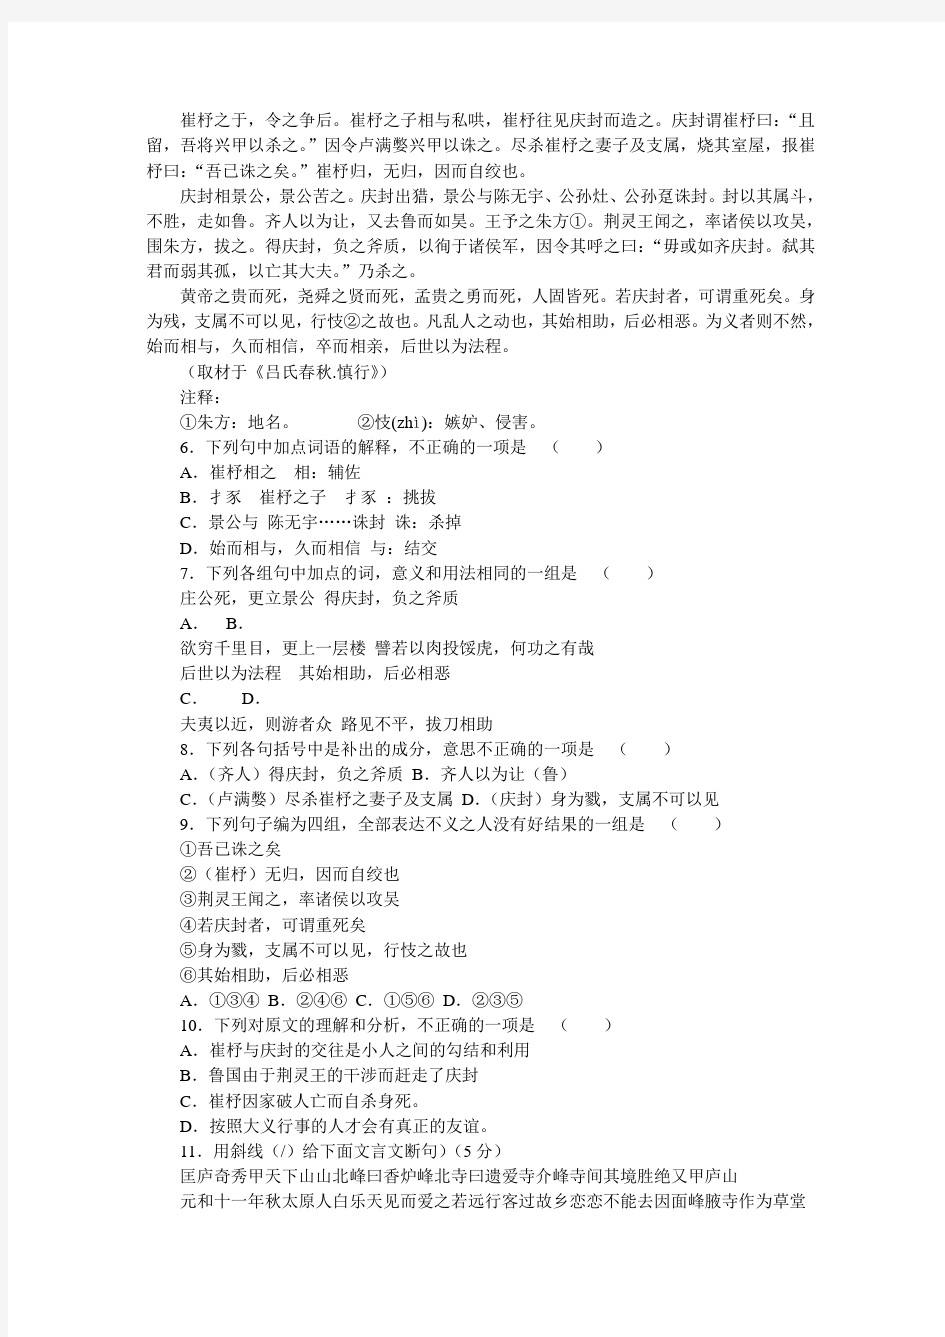 2005年高考语文试卷及答案(北京卷)